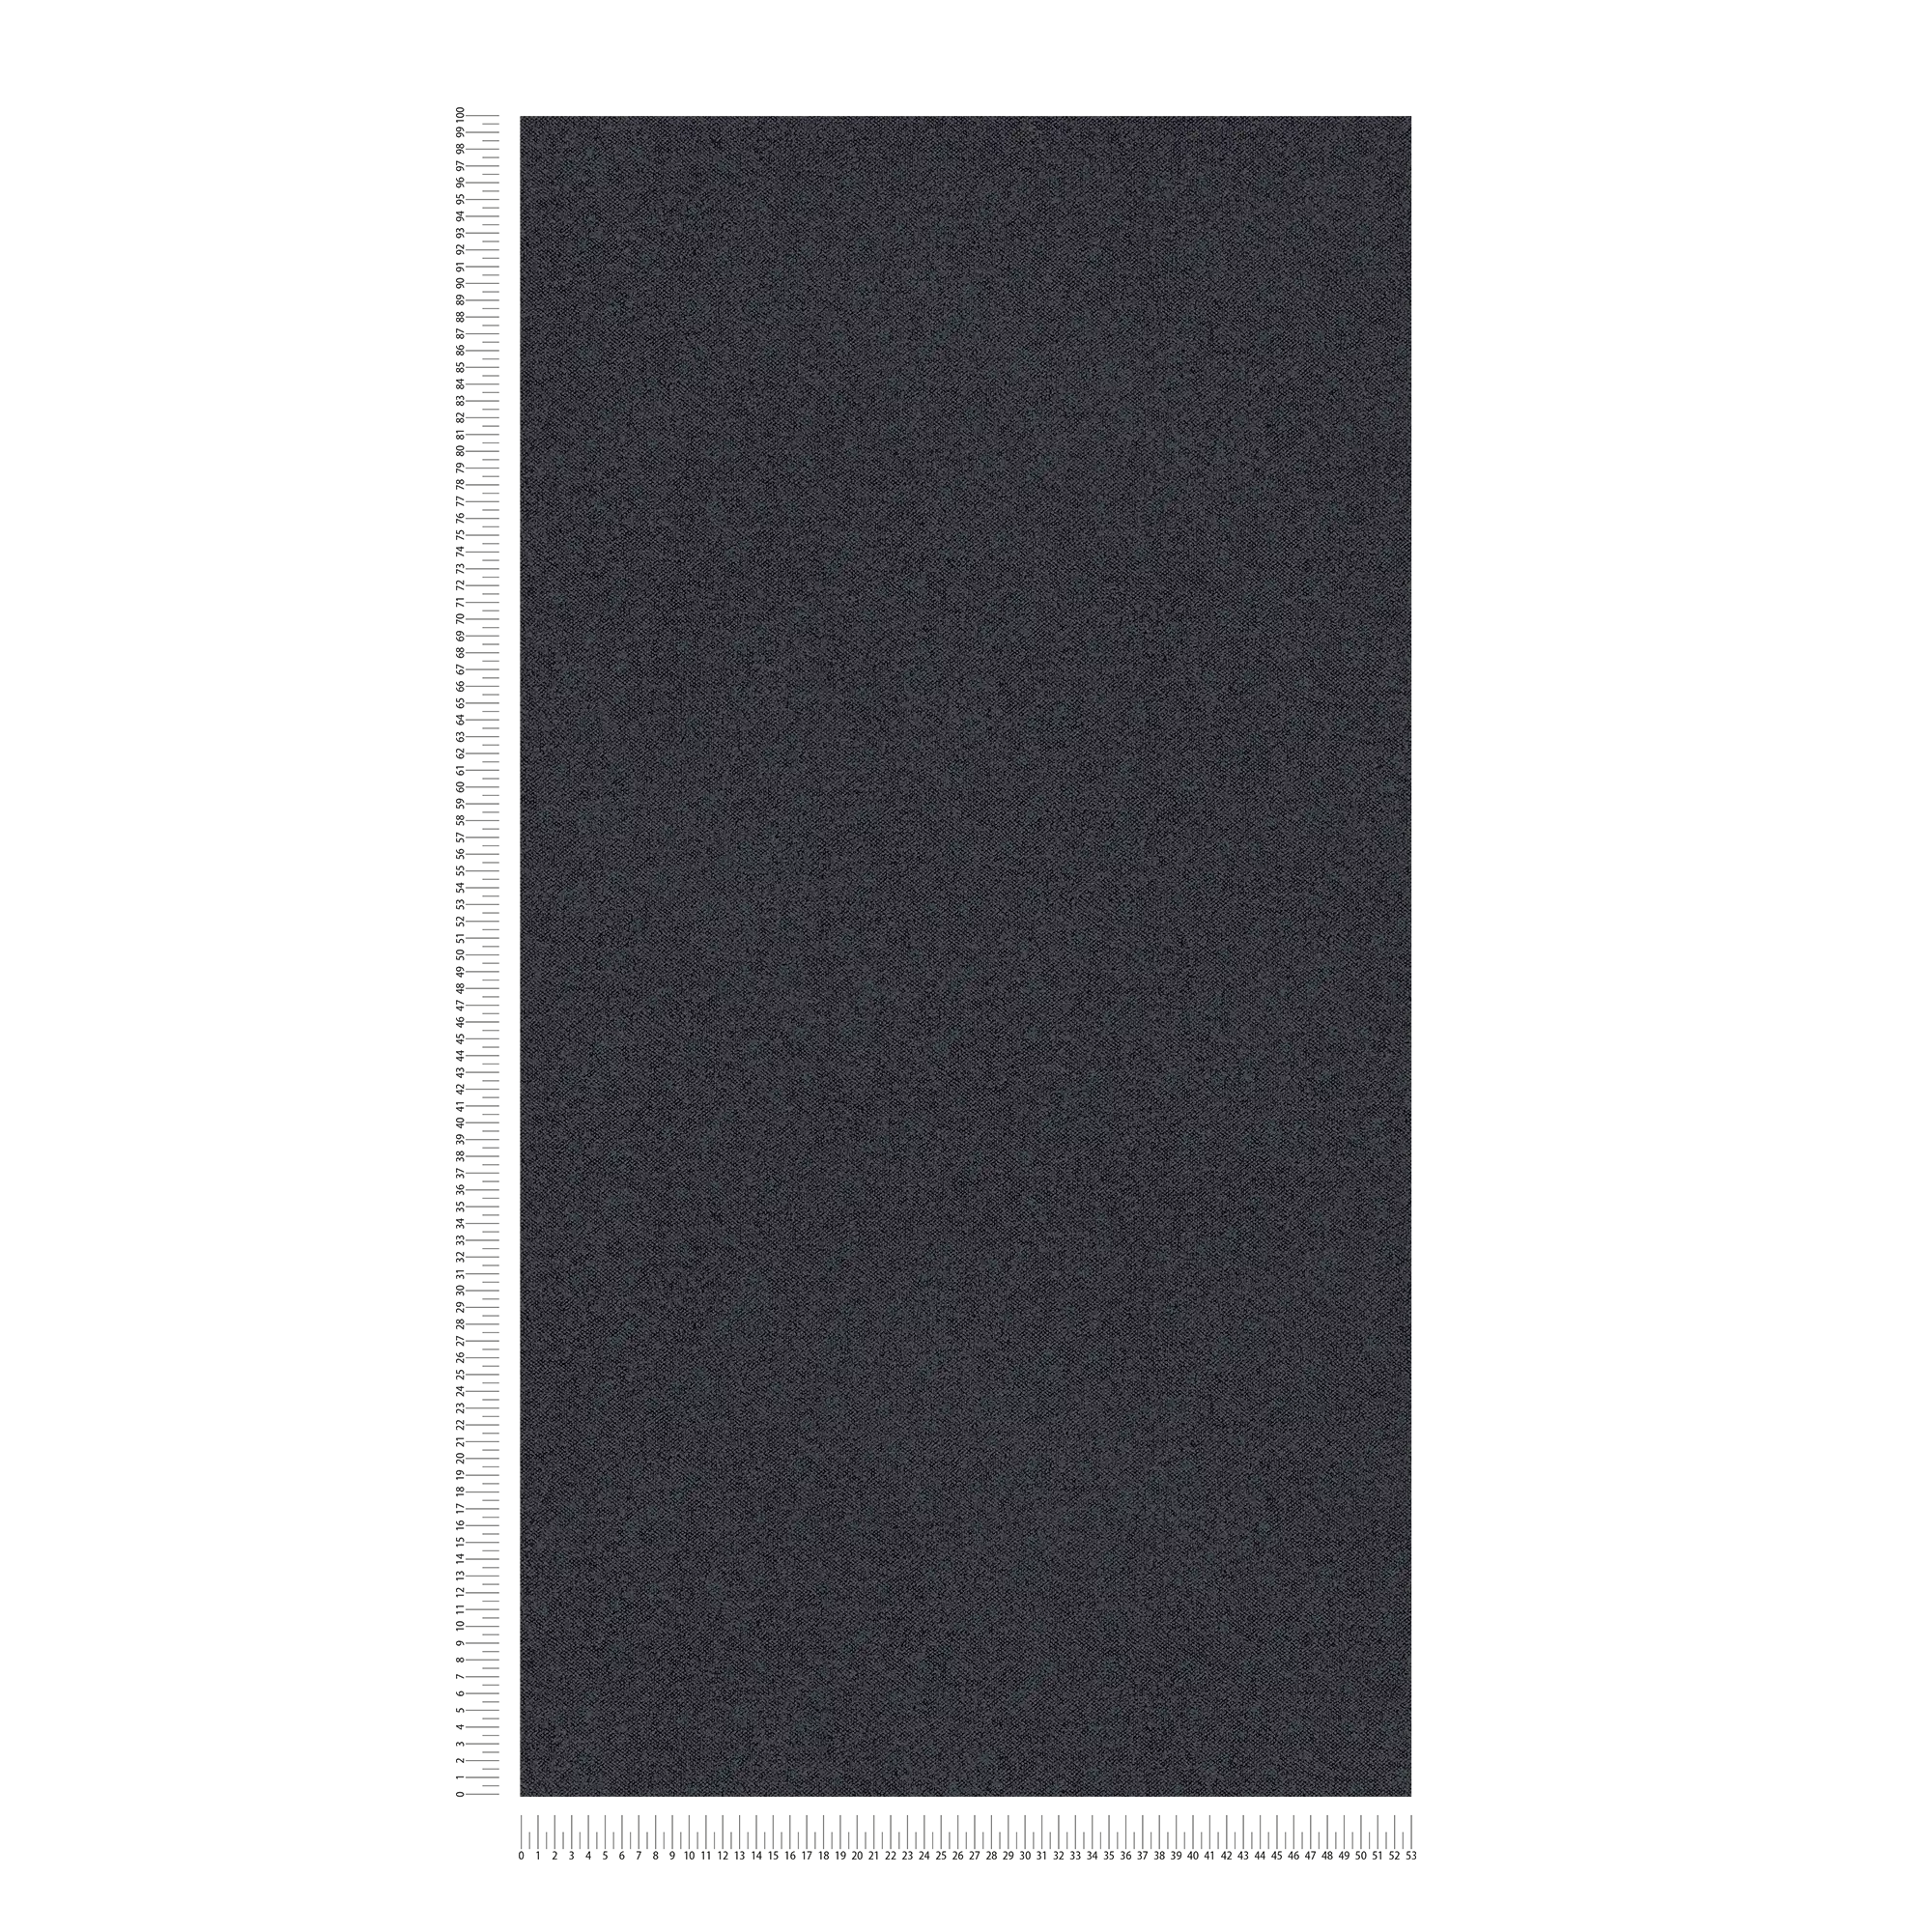             Carta da parati a tinta unita con aspetto lino - nero, grigio
        